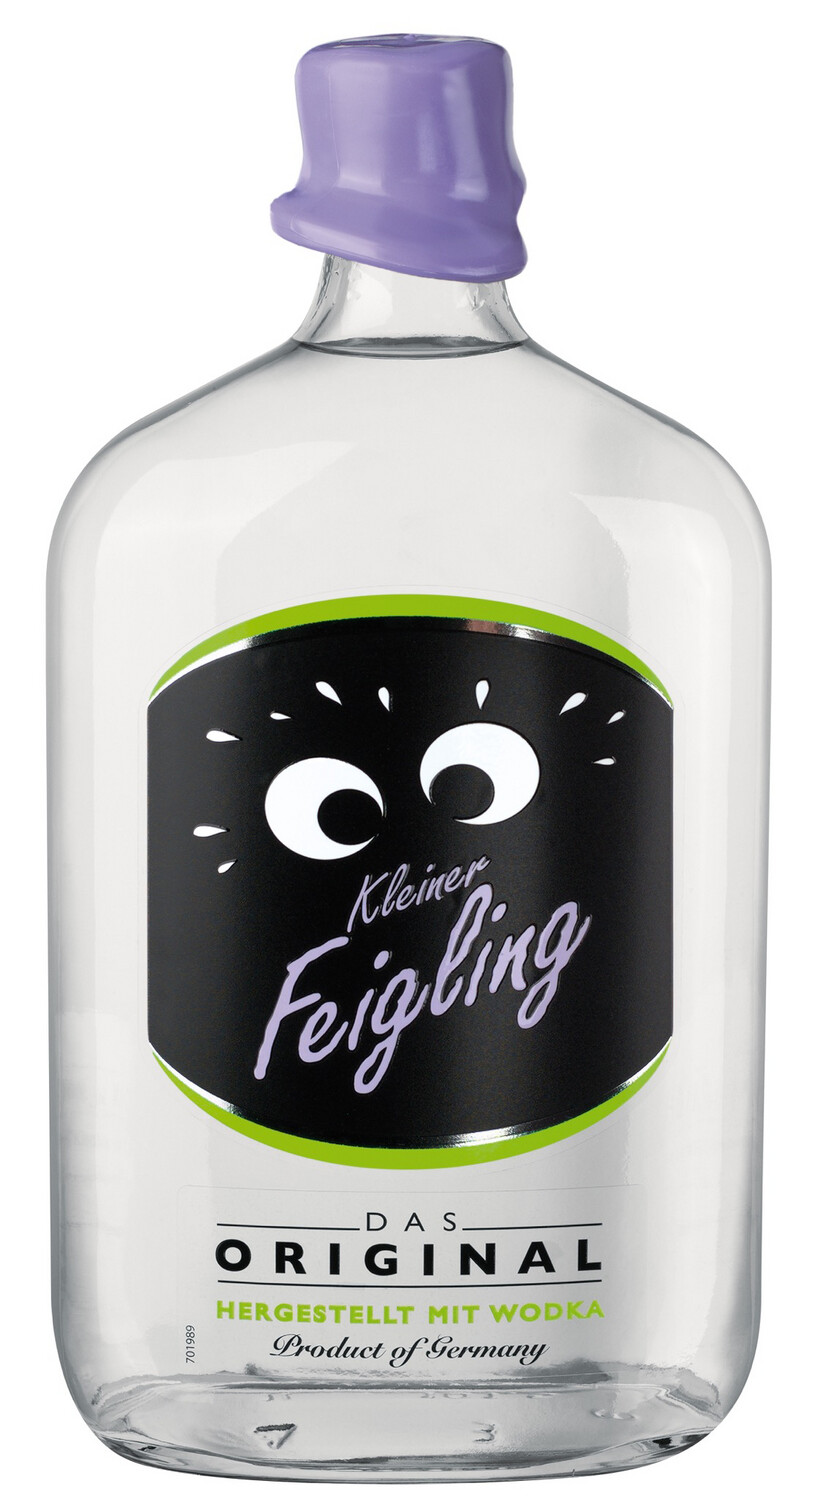 Kleiner Feigling Das Original Hergestellt Mit Wodka Profuct of Germany 1L 